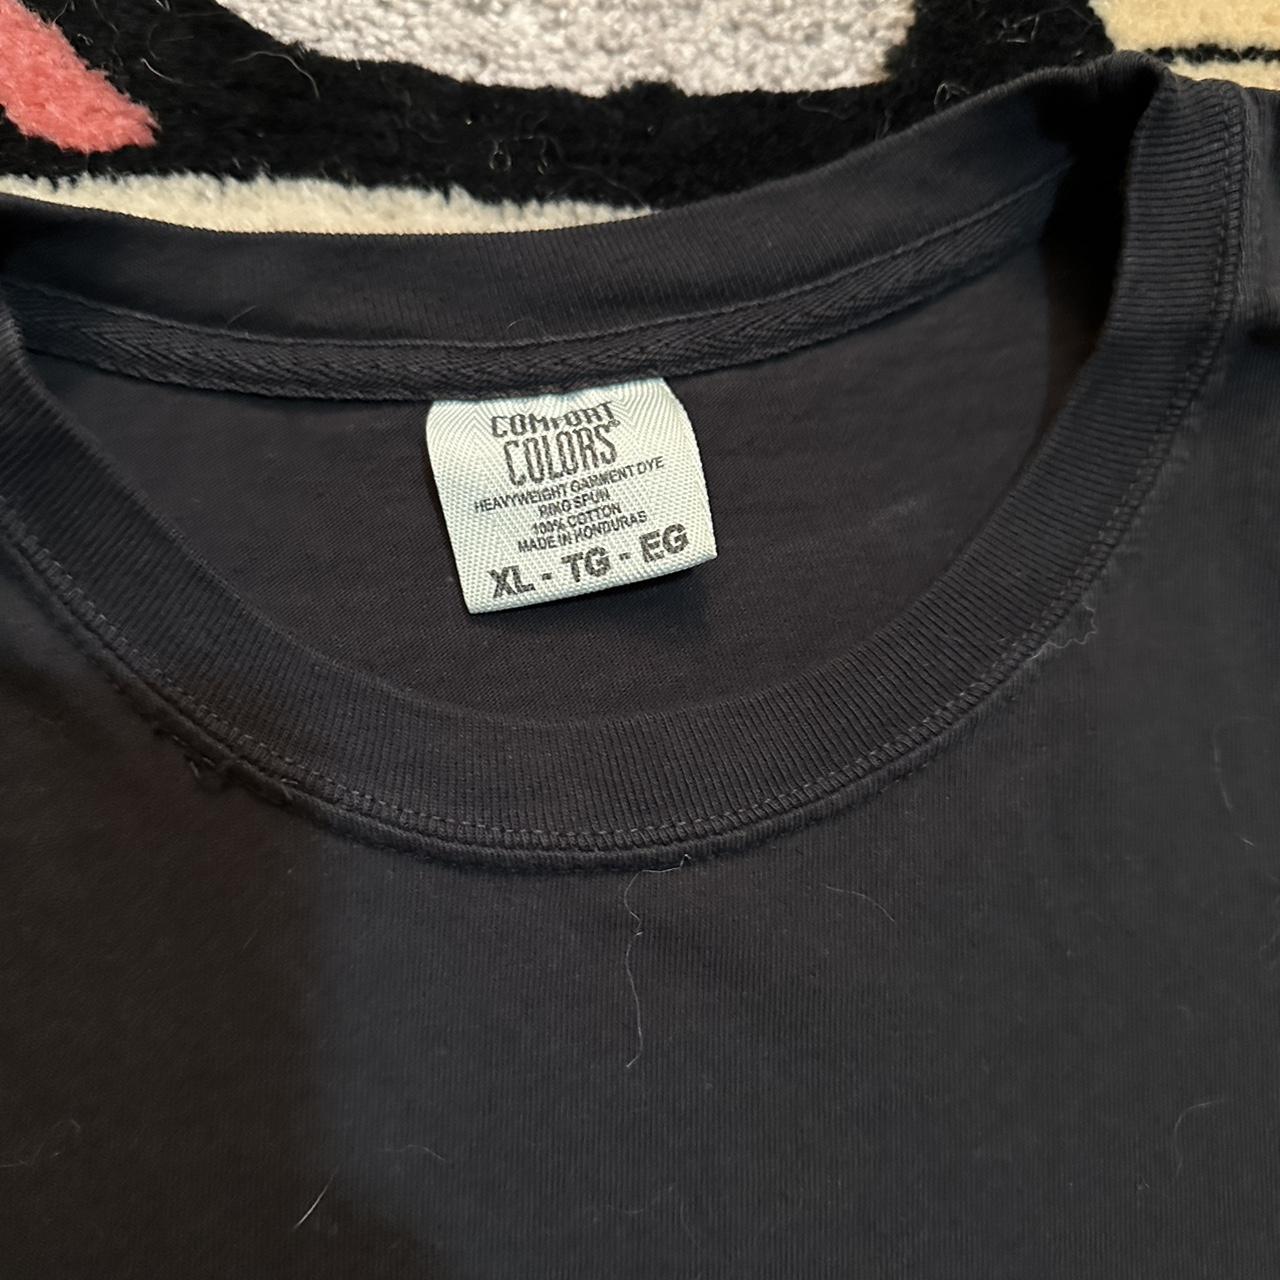 Boot Neon Genesis Evangelion shirt. Size XL on... - Depop